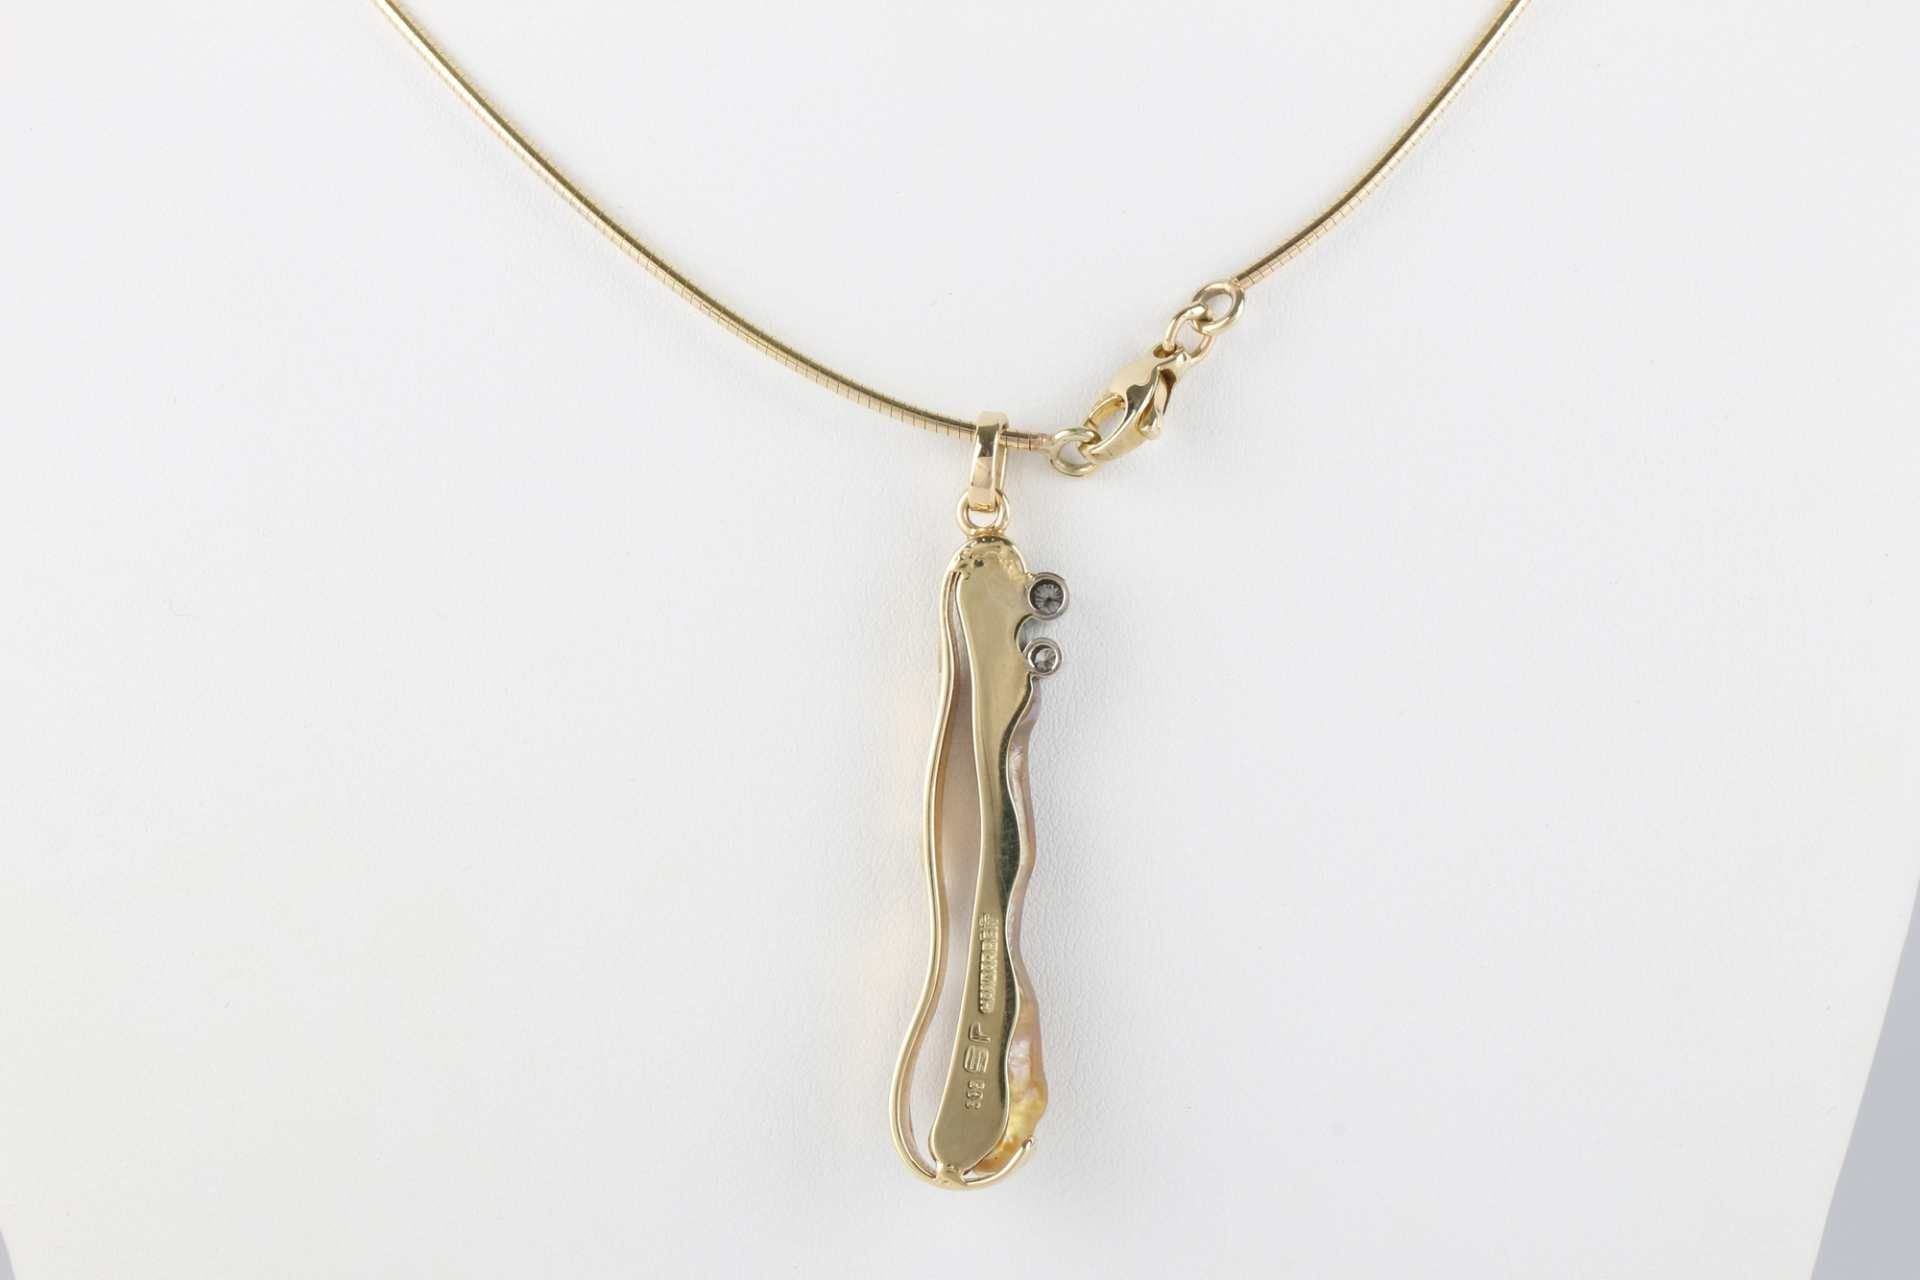 585 Gold Collier, Anhänger Biwa Perle mit zwei Brillanten 0,12 ct an Goldkette, gold necklace, - Image 4 of 5